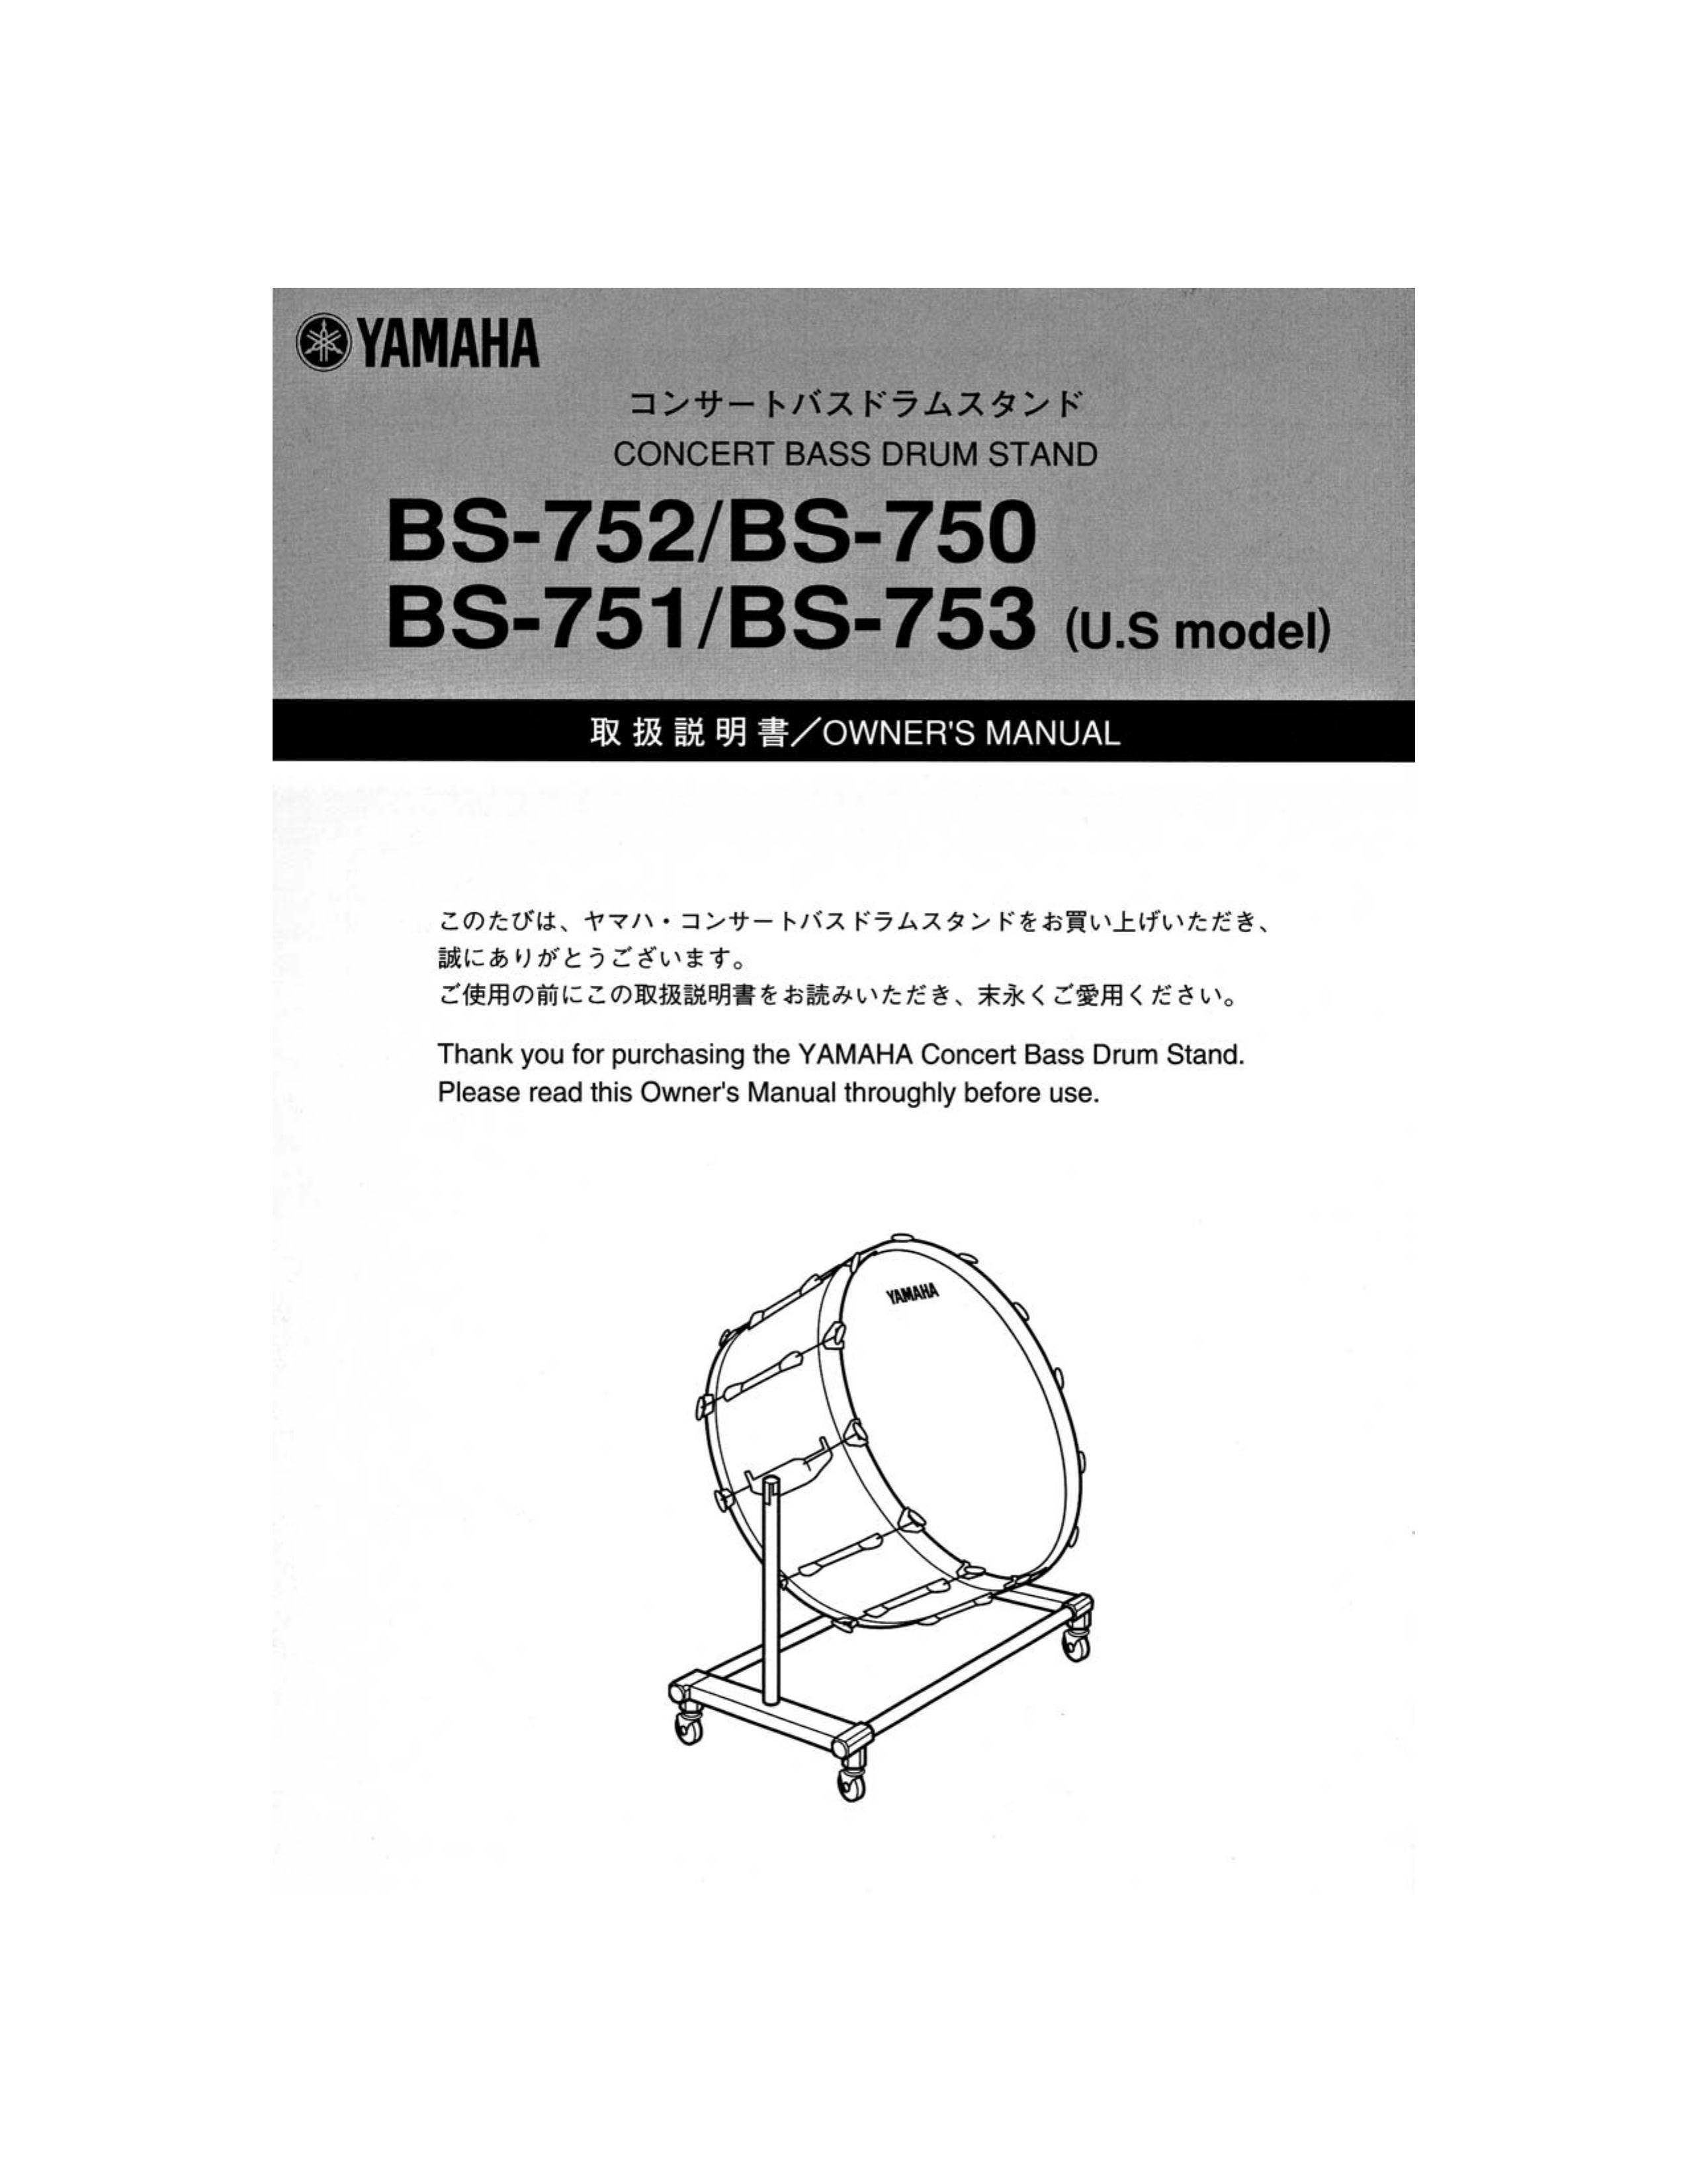 Yamaha BS-753 Drums User Manual